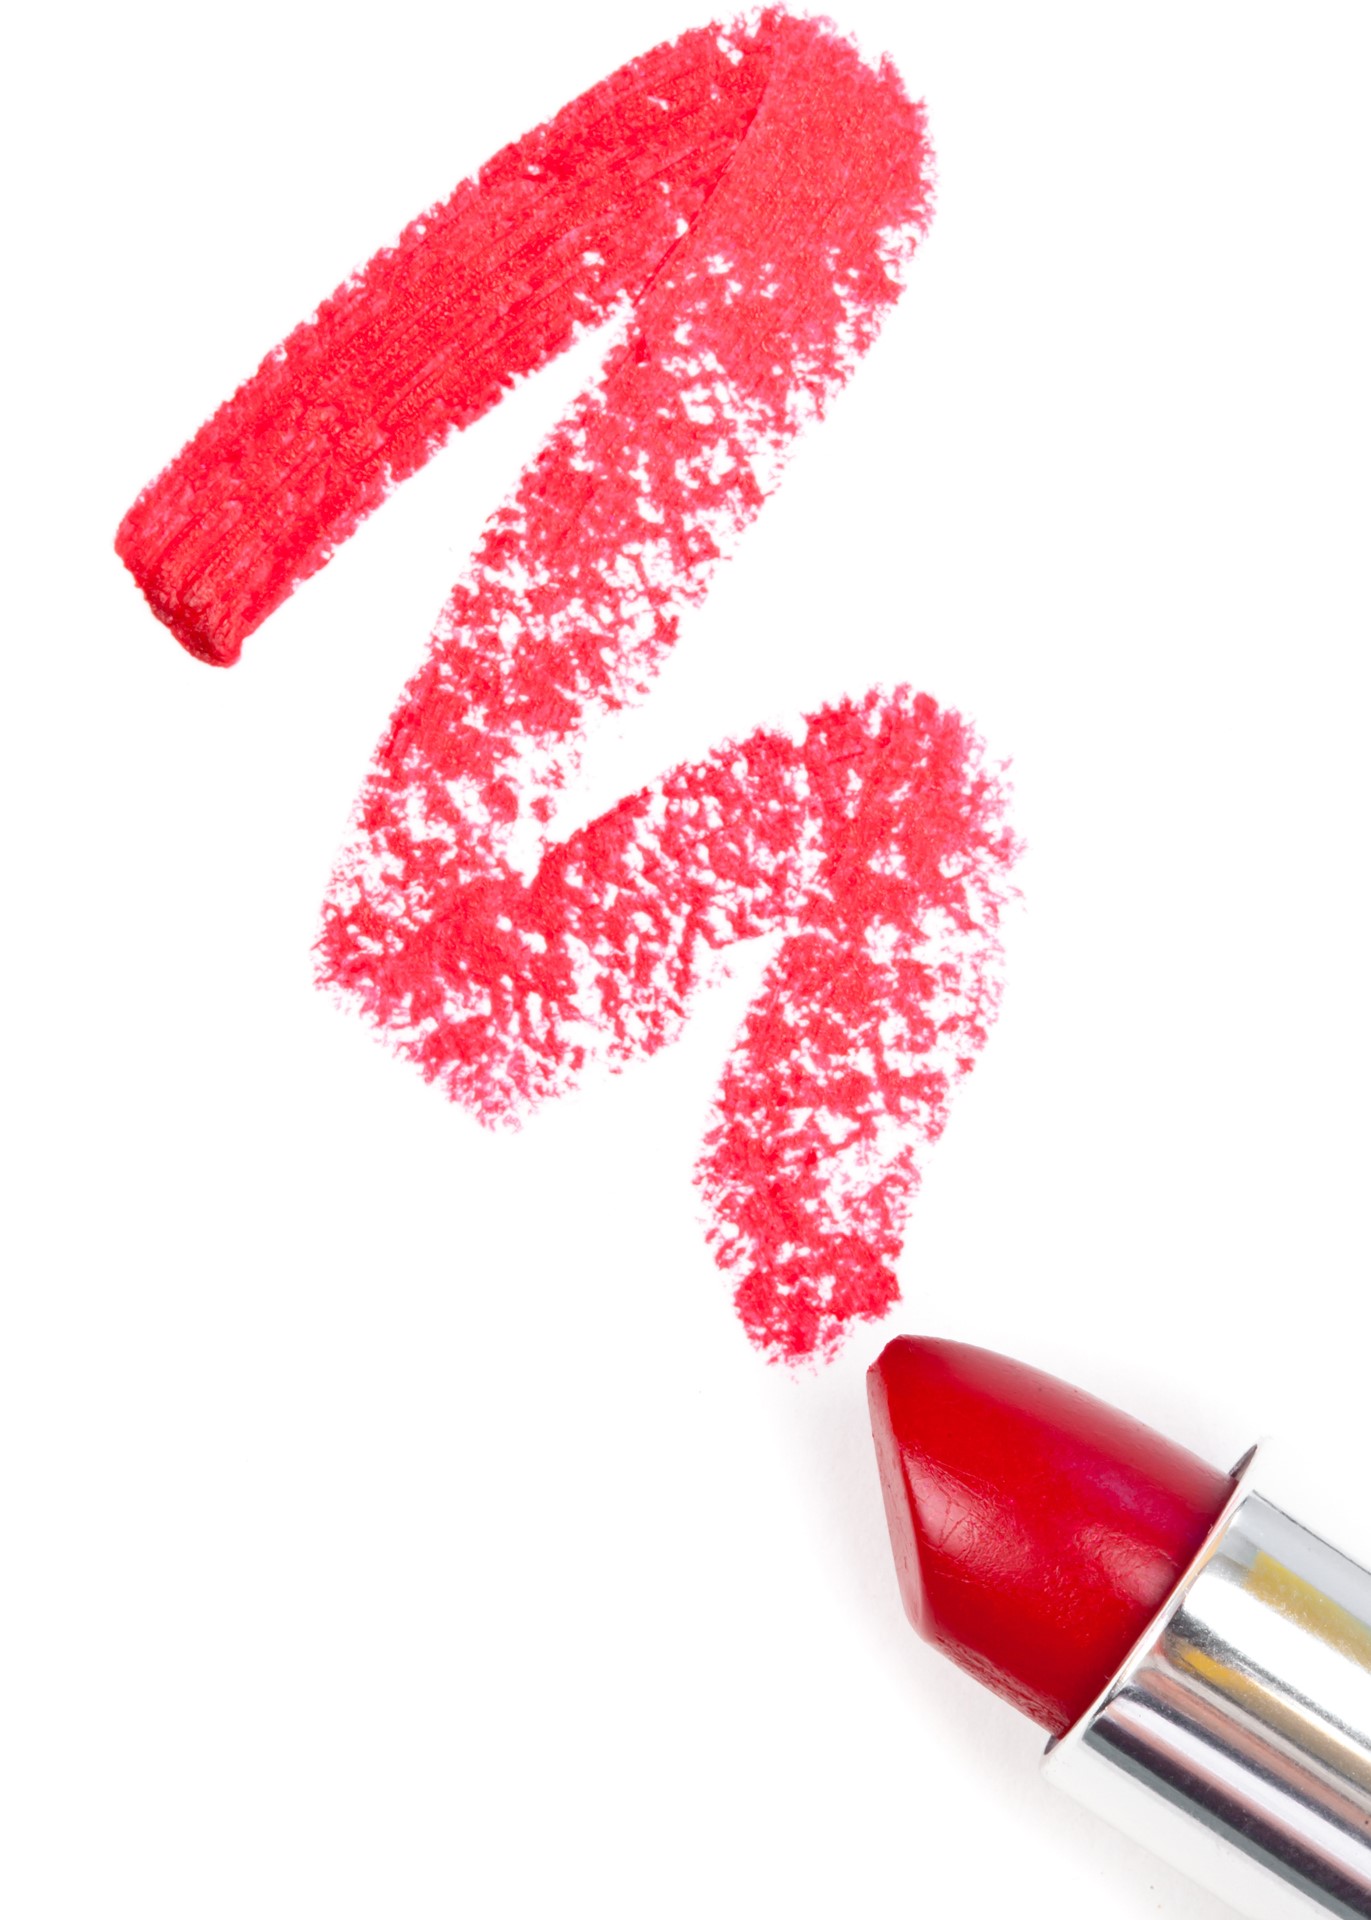 Lipstick waterproofs matches (Thinkstock/PA)